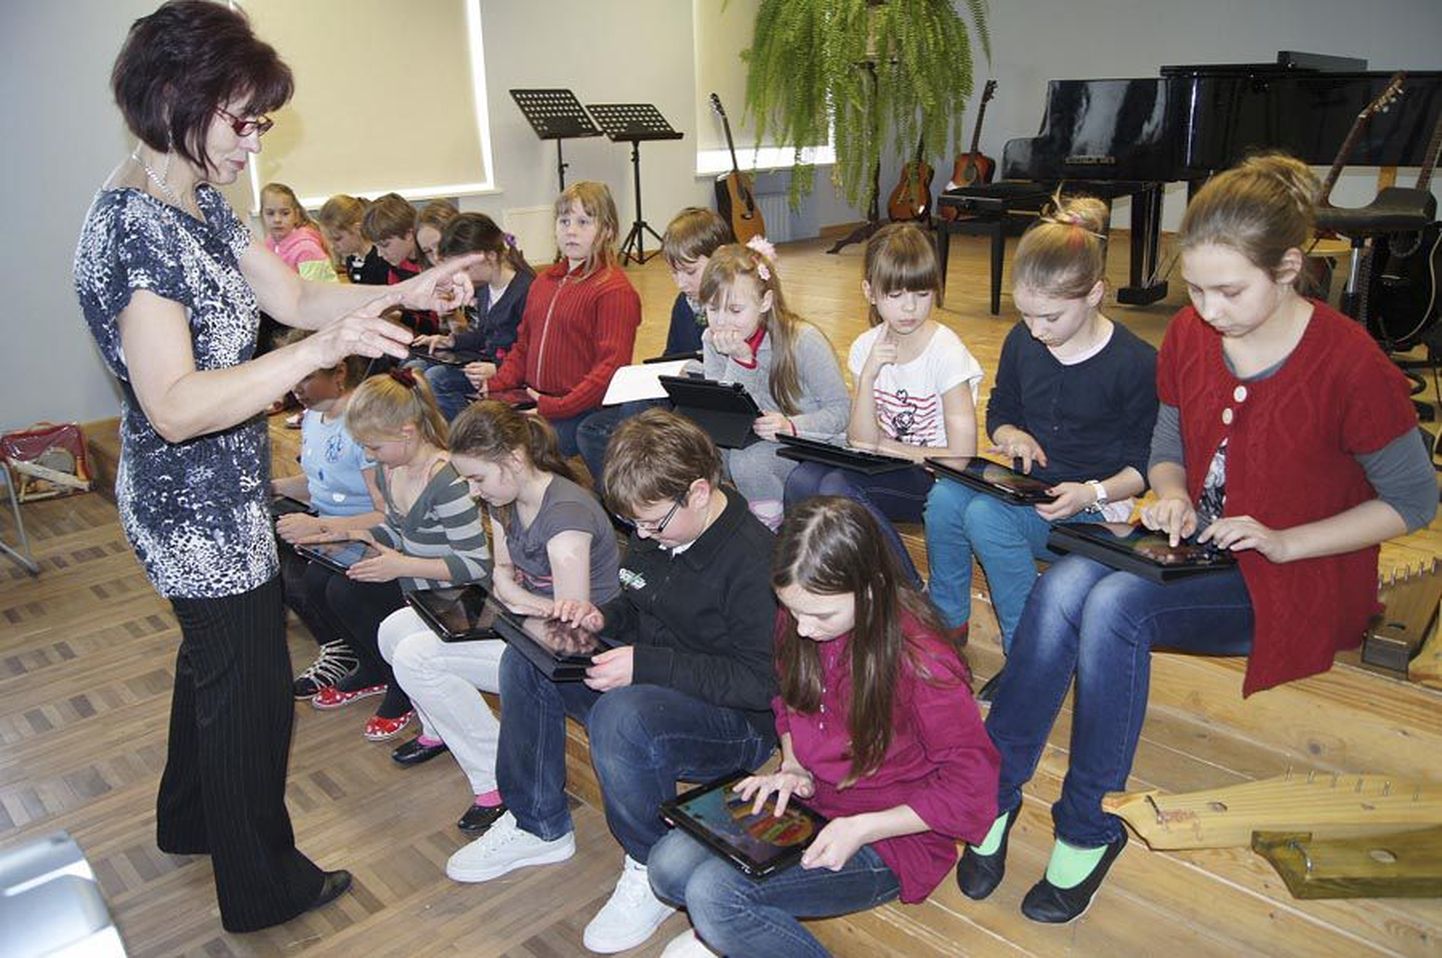 Õpetaja Tiina Jõgise juhendamisel koondusid lapsed tahvelarvutite orkestrisse, et pillipäeva lõpukontserdil esitada omalaadset muusikat.